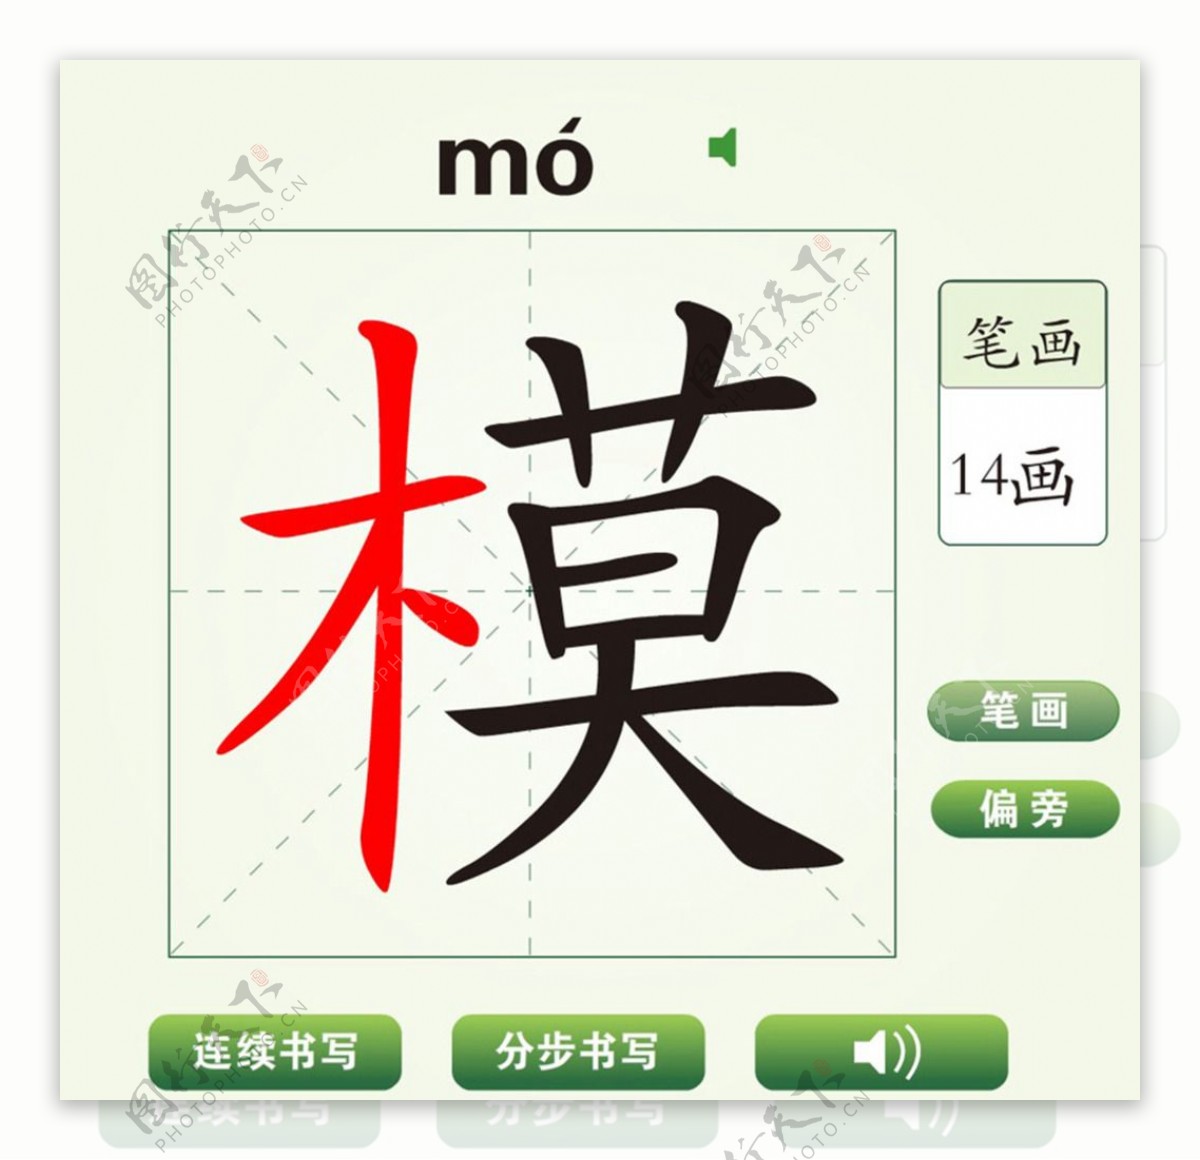 中国汉字模字笔画教学动画视频